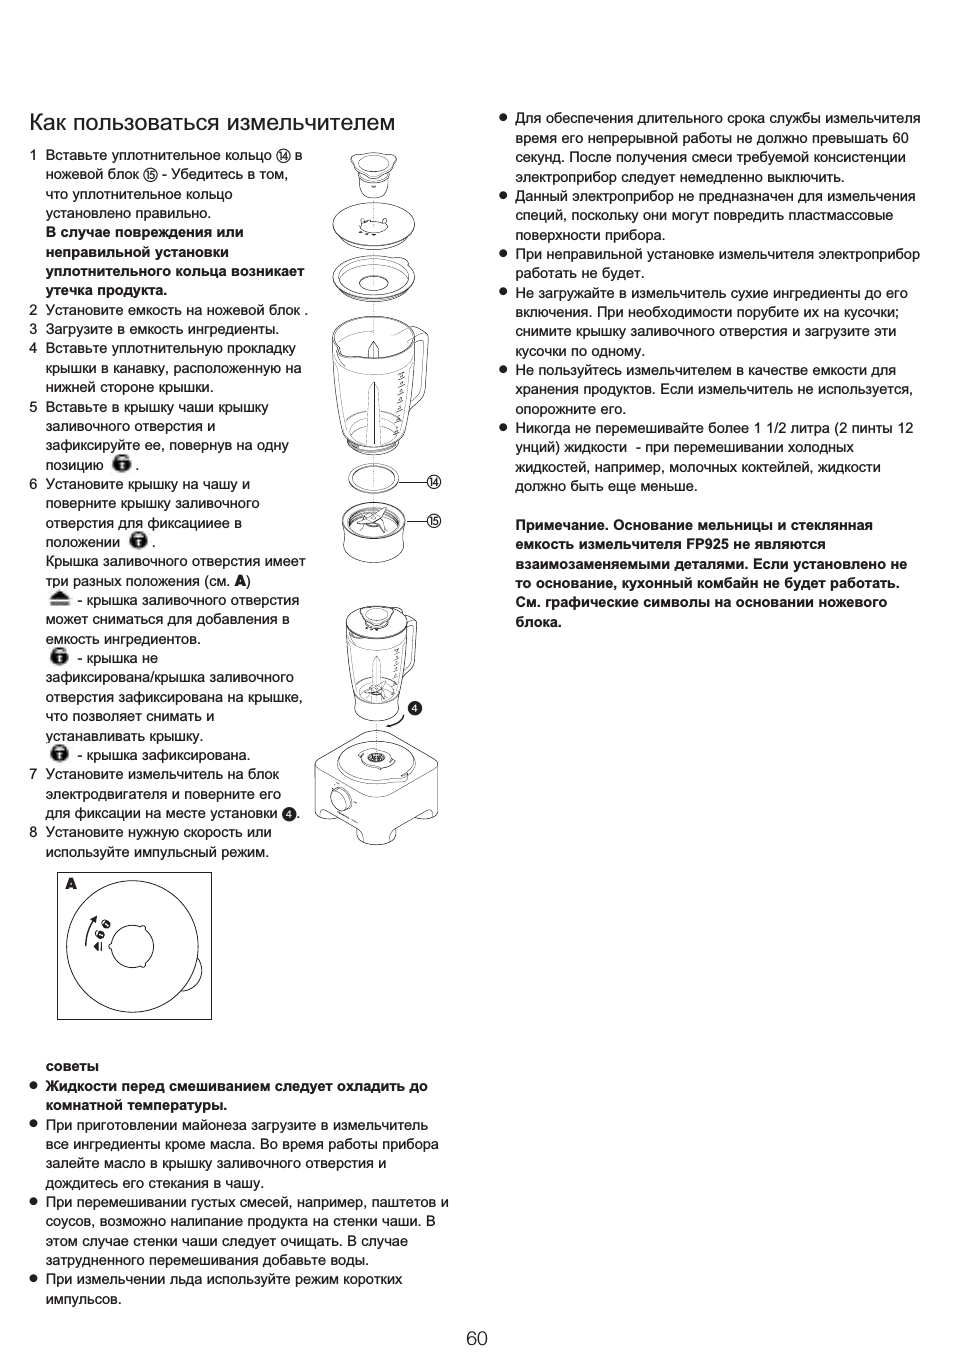 Как пользоваться кухонным комбайном согласно инструкции по эксплуатации - кухонный.ру